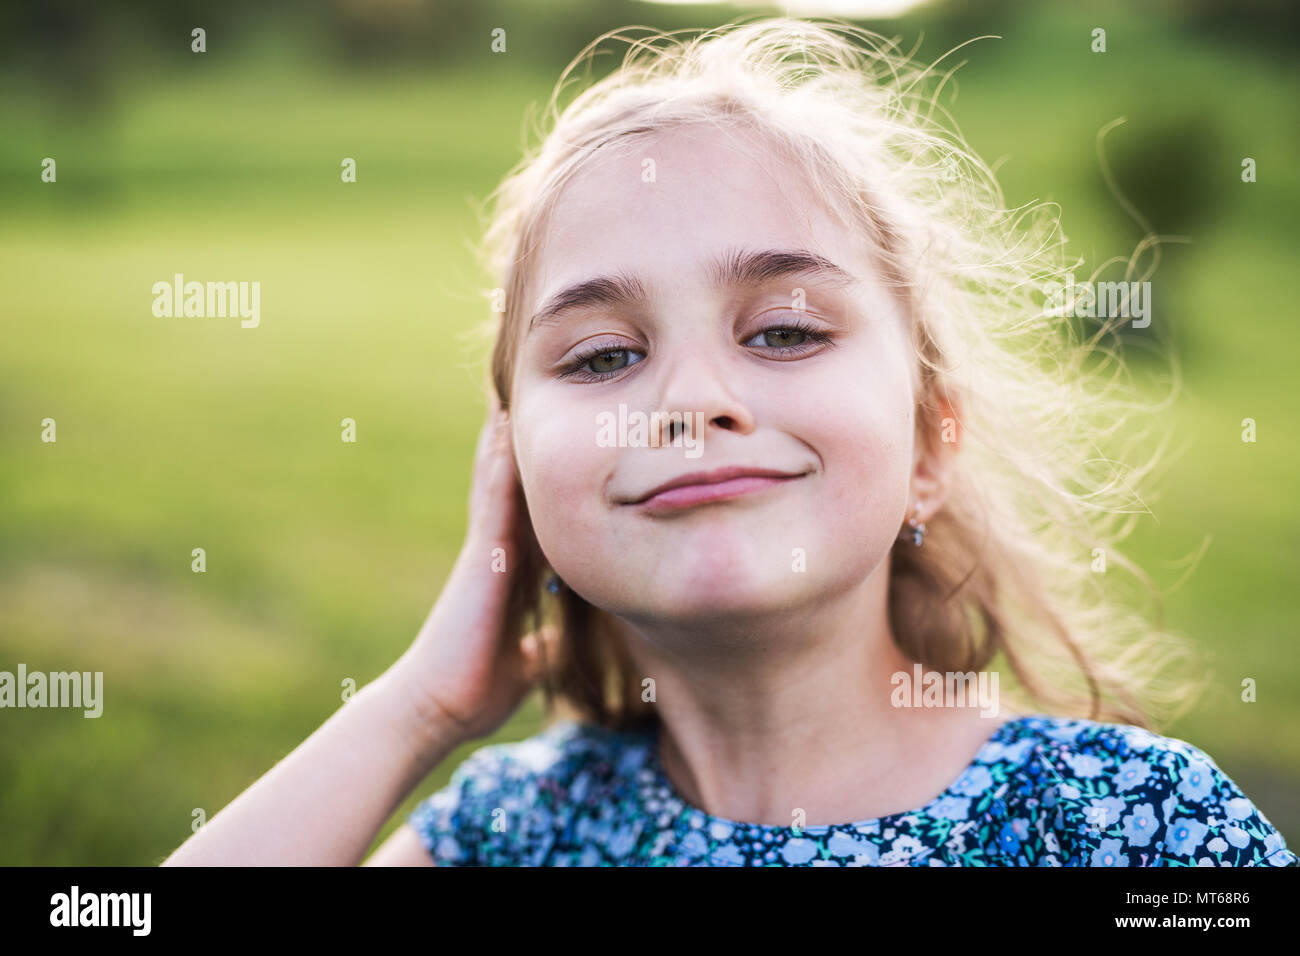 Ein kleines Mädchen in den Garten im Frühling Natur. Stockfoto